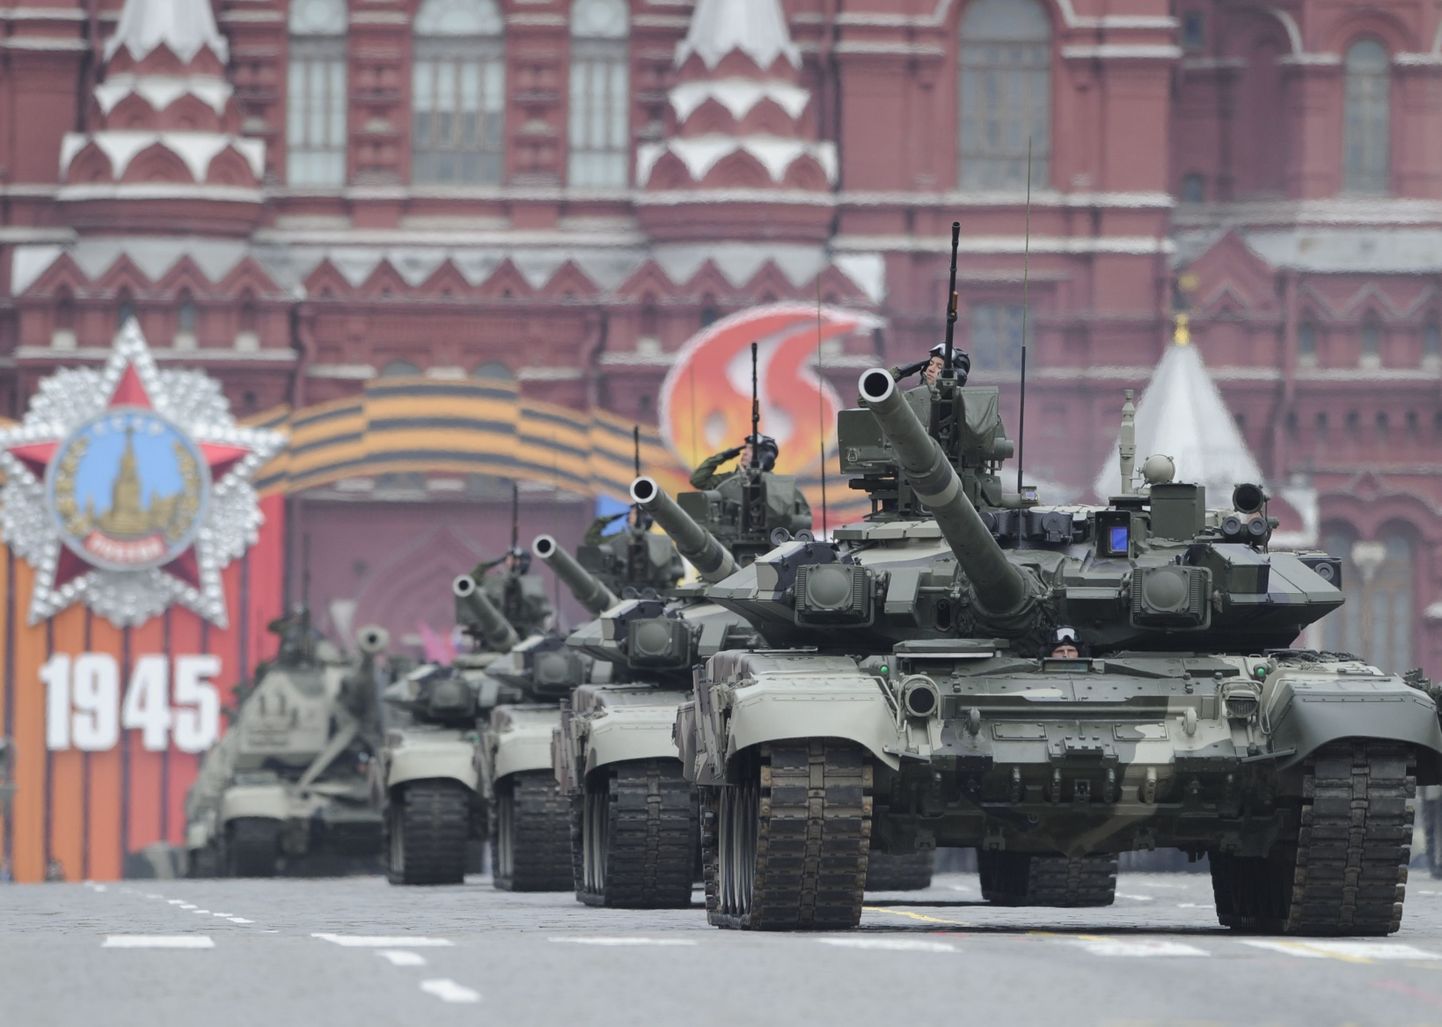 Vene tankid T-90 vuravad Moskvas Punasel väljakul.